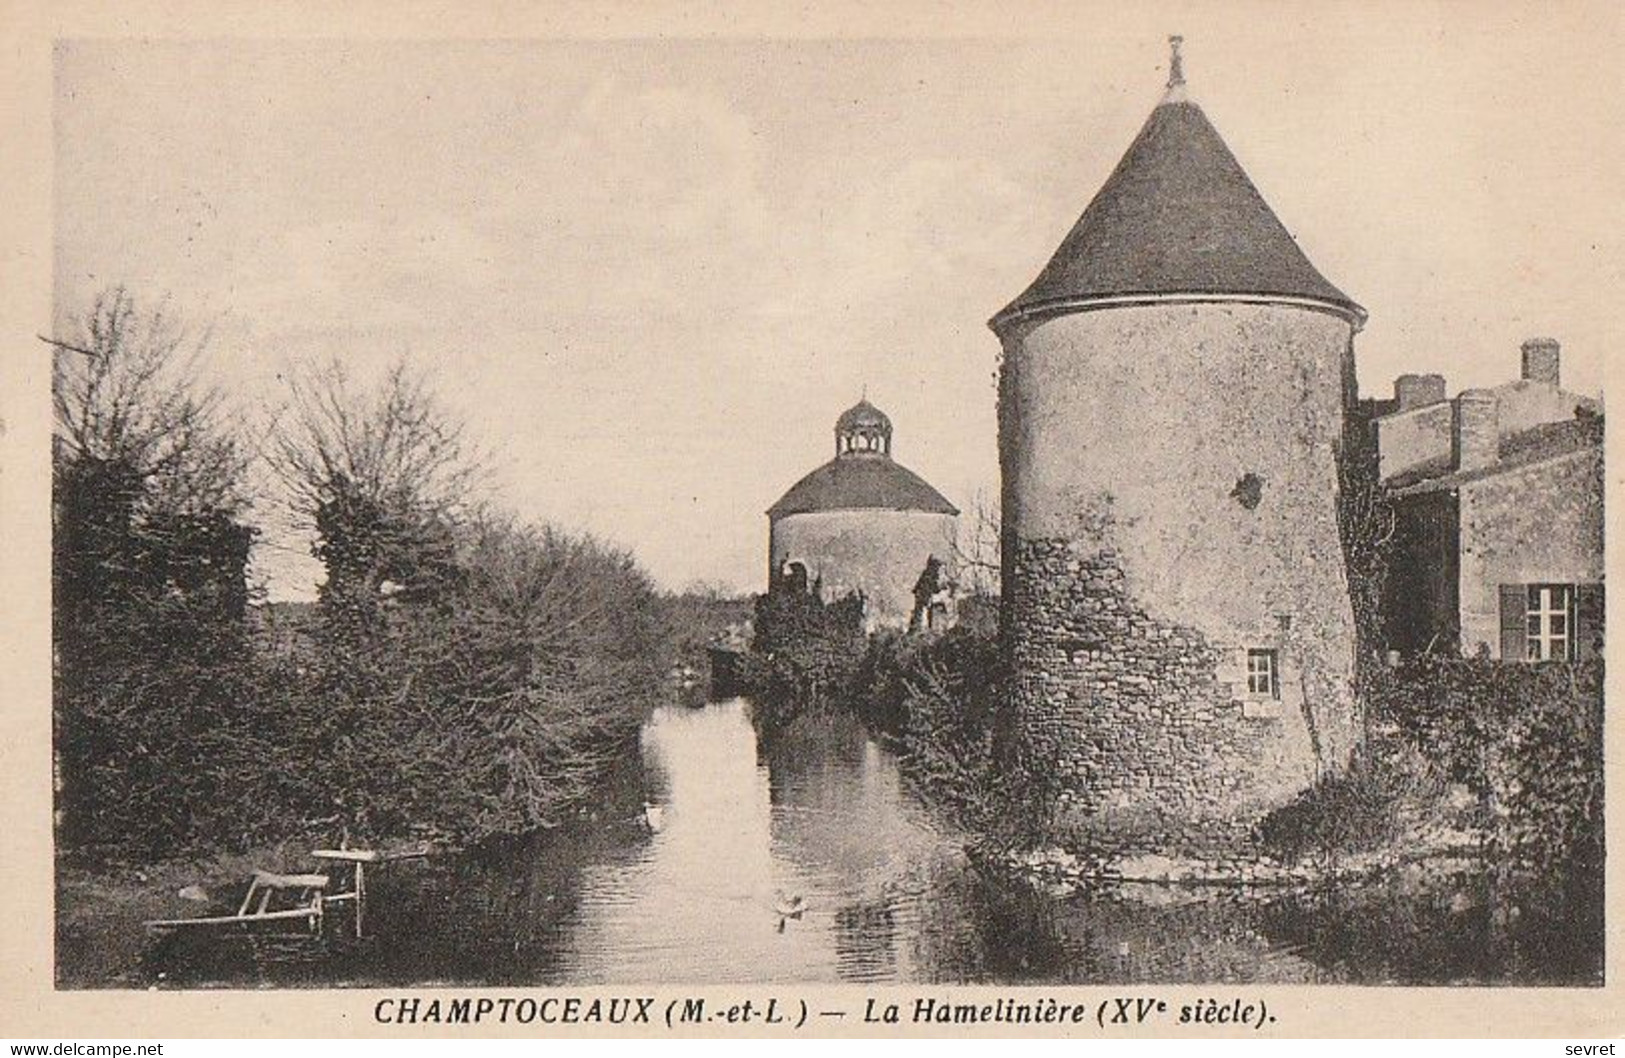 CHAMPTOCEAUX. - La Hamelinière - Champtoceaux